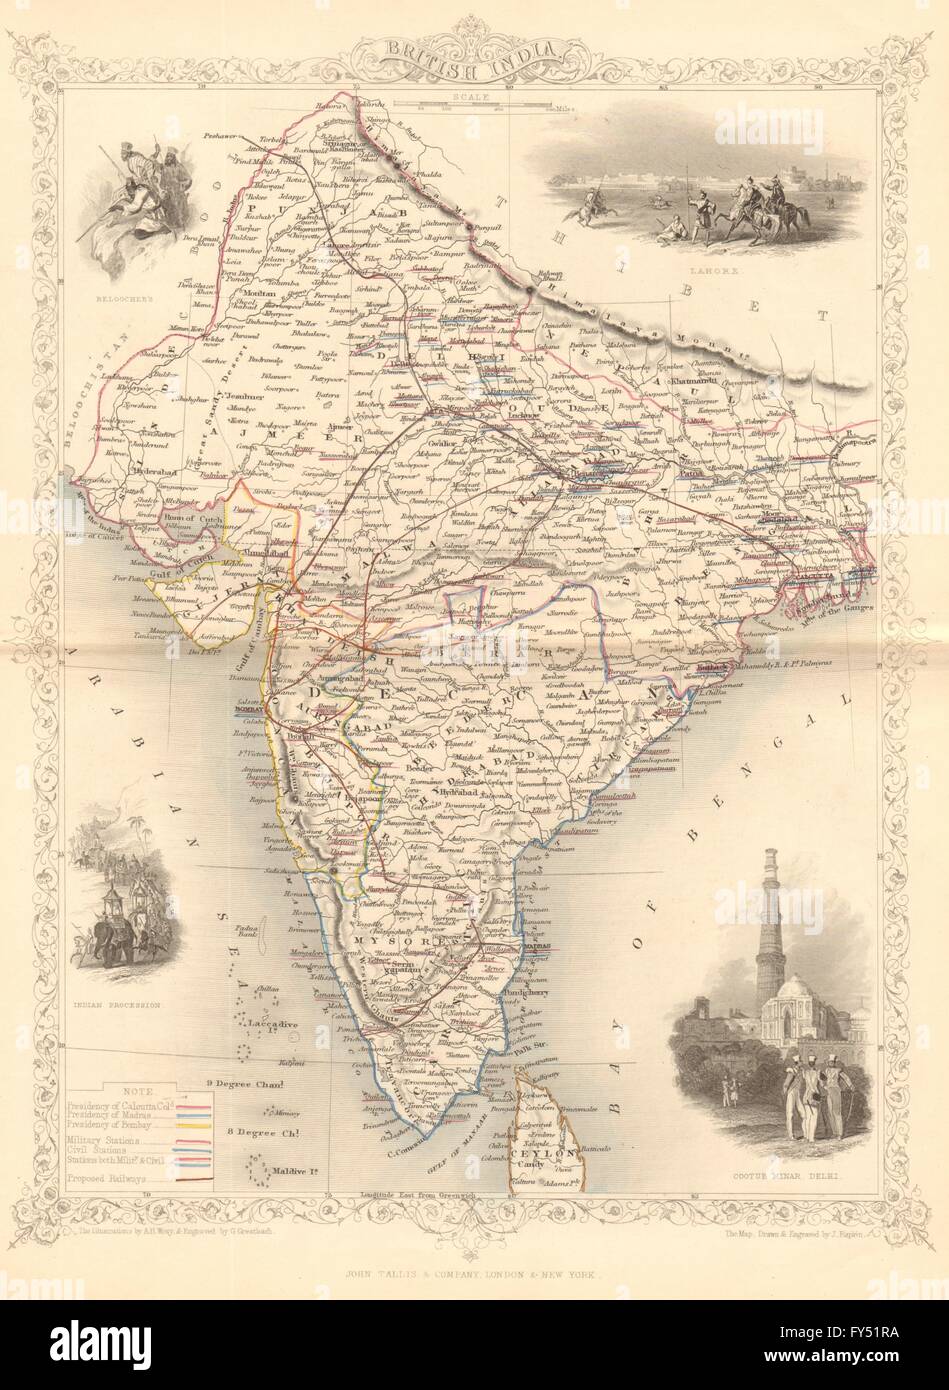 L'Inde britannique. La montre "Proposition de chemins'. Les bases militaires.TALLIS/RAPKIN, 1849 map Banque D'Images